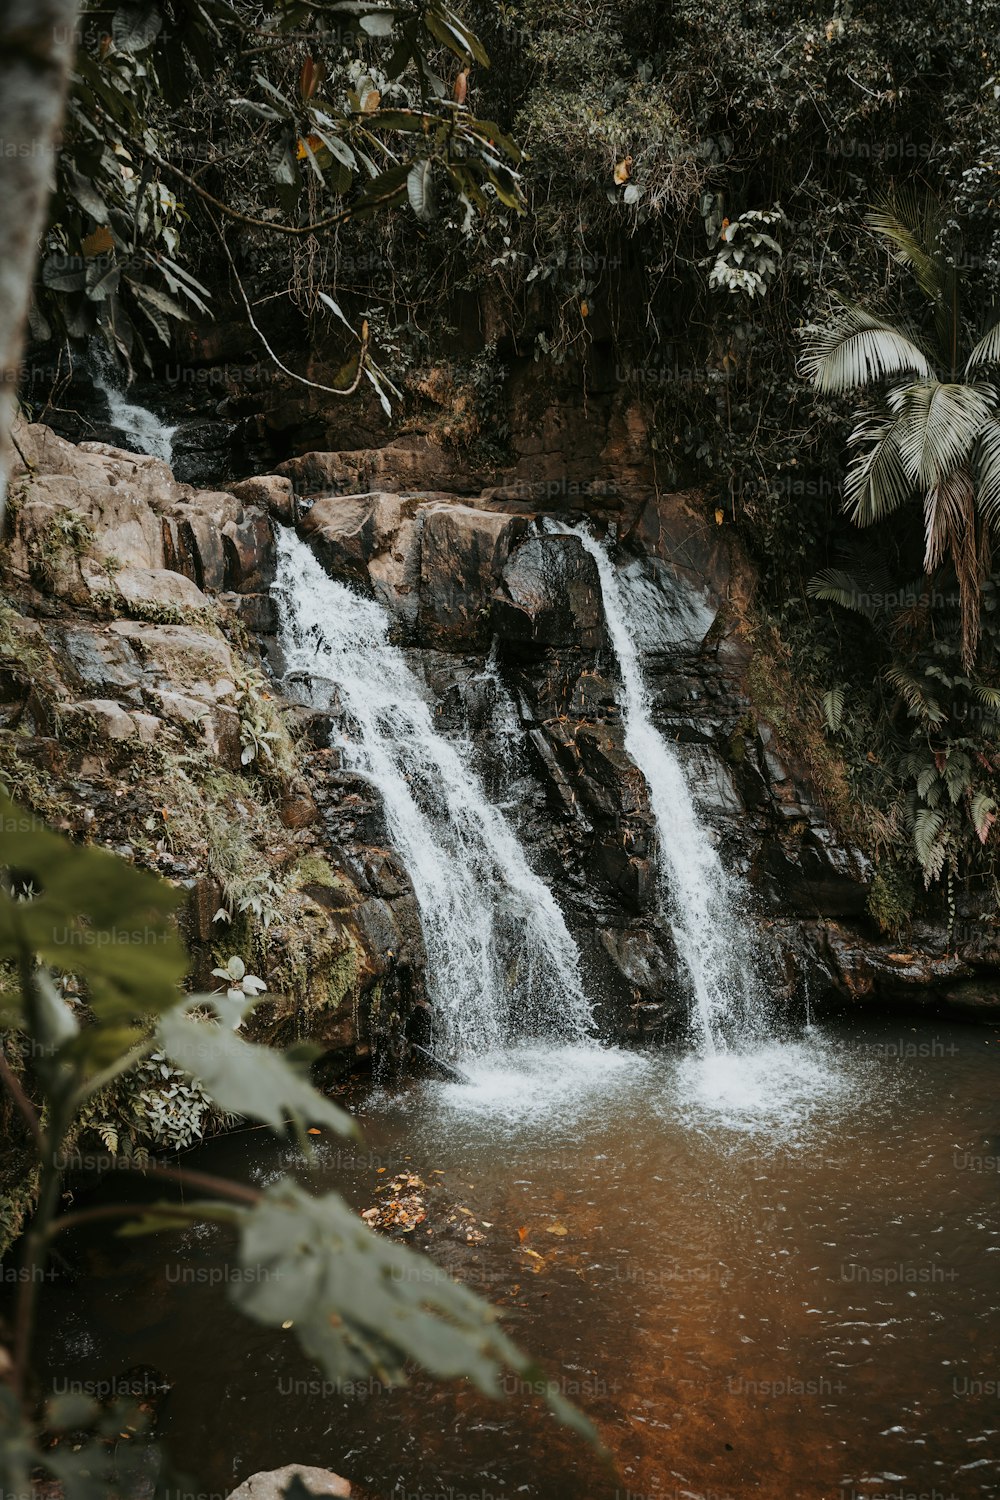 Una piccola cascata nel mezzo di una giungla